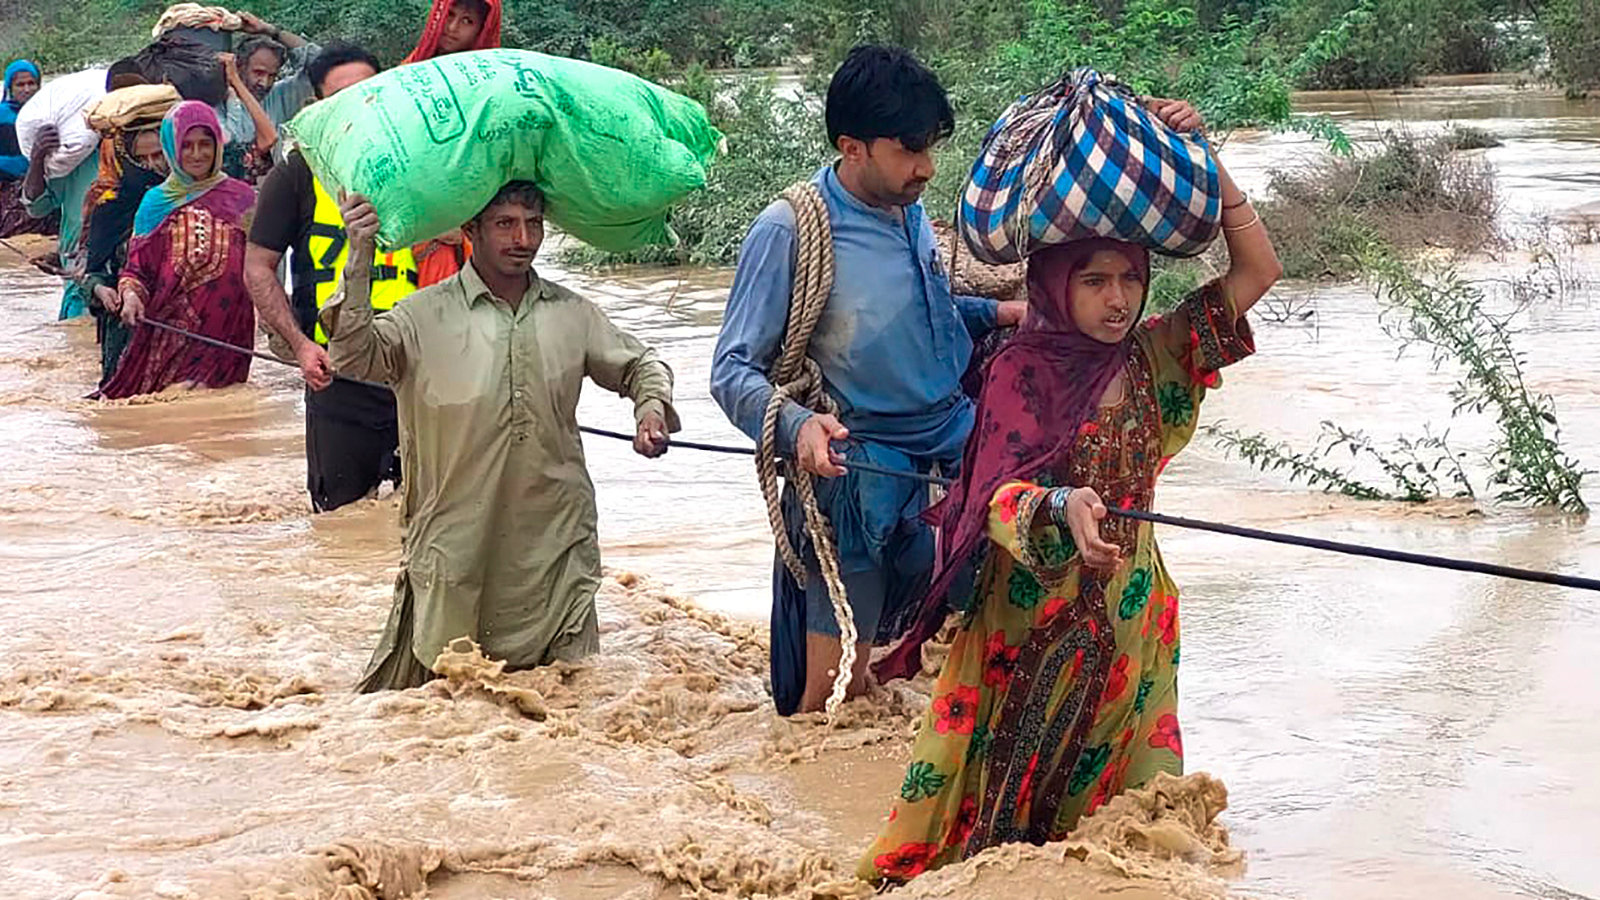 Ministri Volontari accorsi da tutto il Pakistan forniscono assistenze, medicine, cibo e rifornimenti vitali a coloro che sono stati colpiti dalle inondazioni.